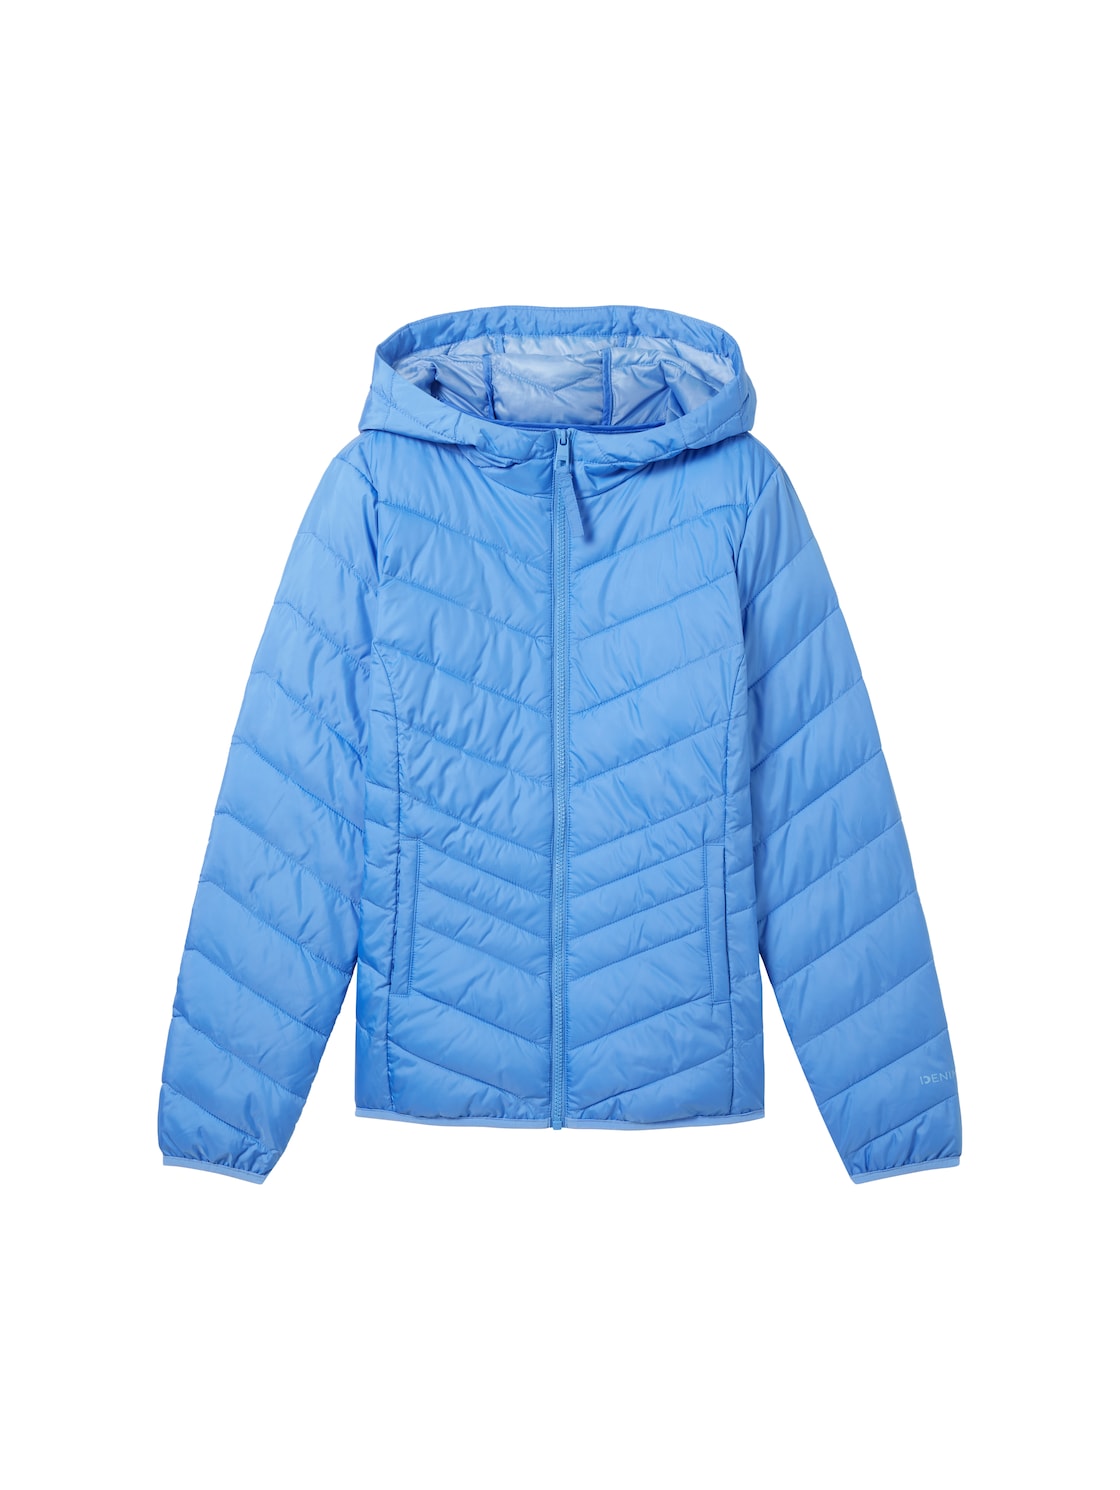 TOM TAILOR DENIM Damen Lightweight Jacke mit recyceltem Polyester, blau, Uni, Gr. S von Tom Tailor Denim